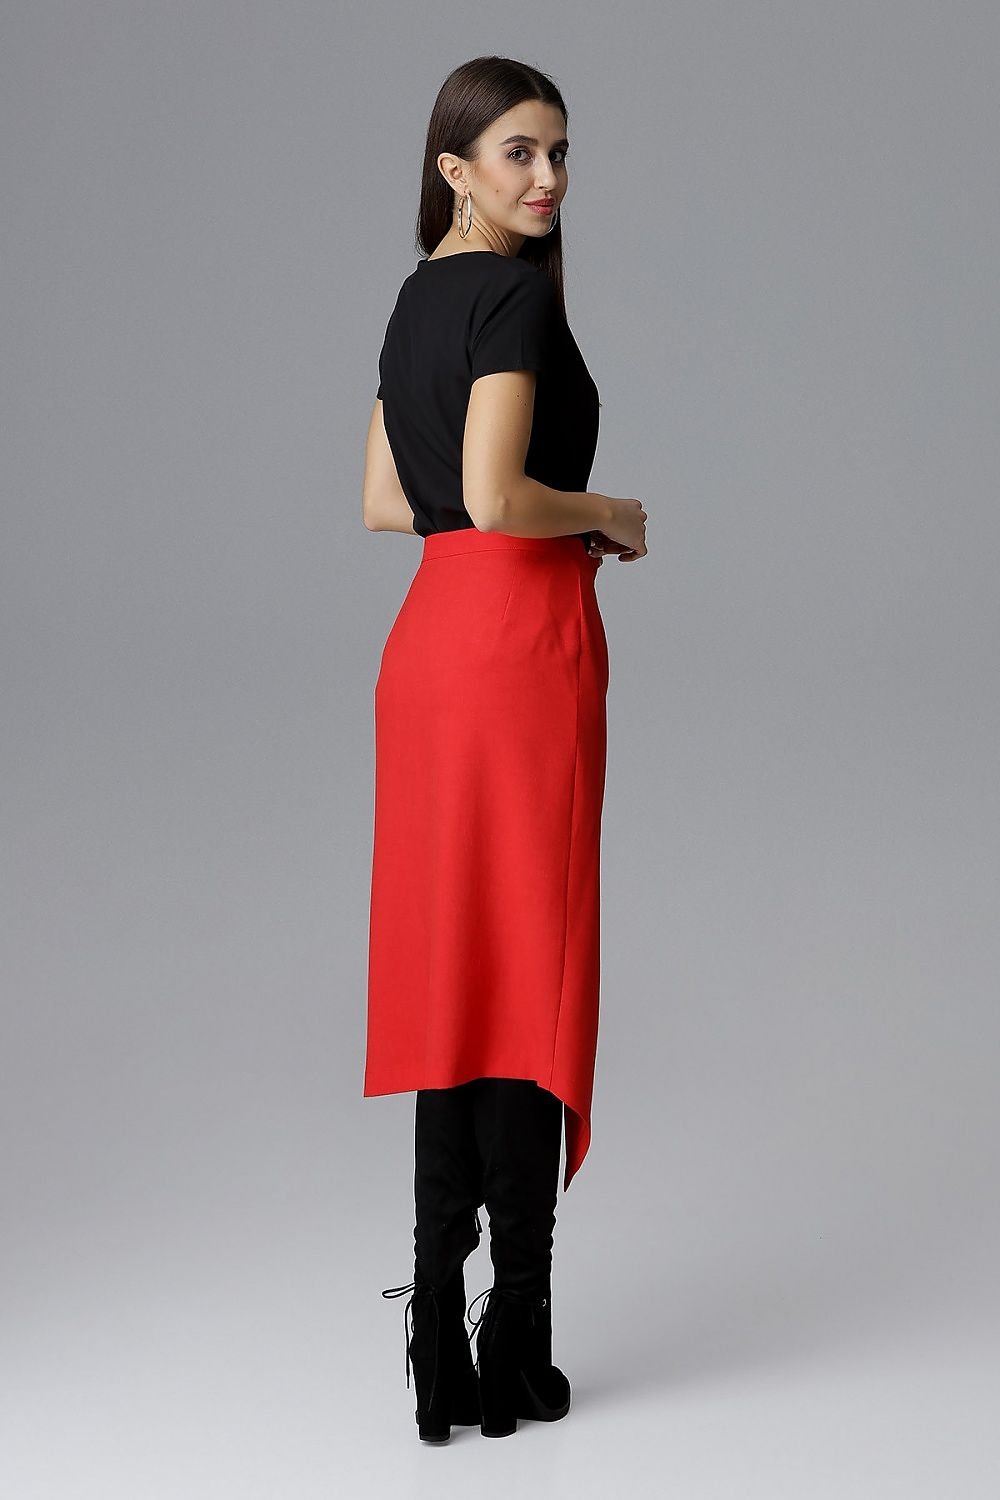 Jupe asymétrique portefeuille rouge élégante, coupe moderne, parfaite pour une tenue chic ou de bureau.